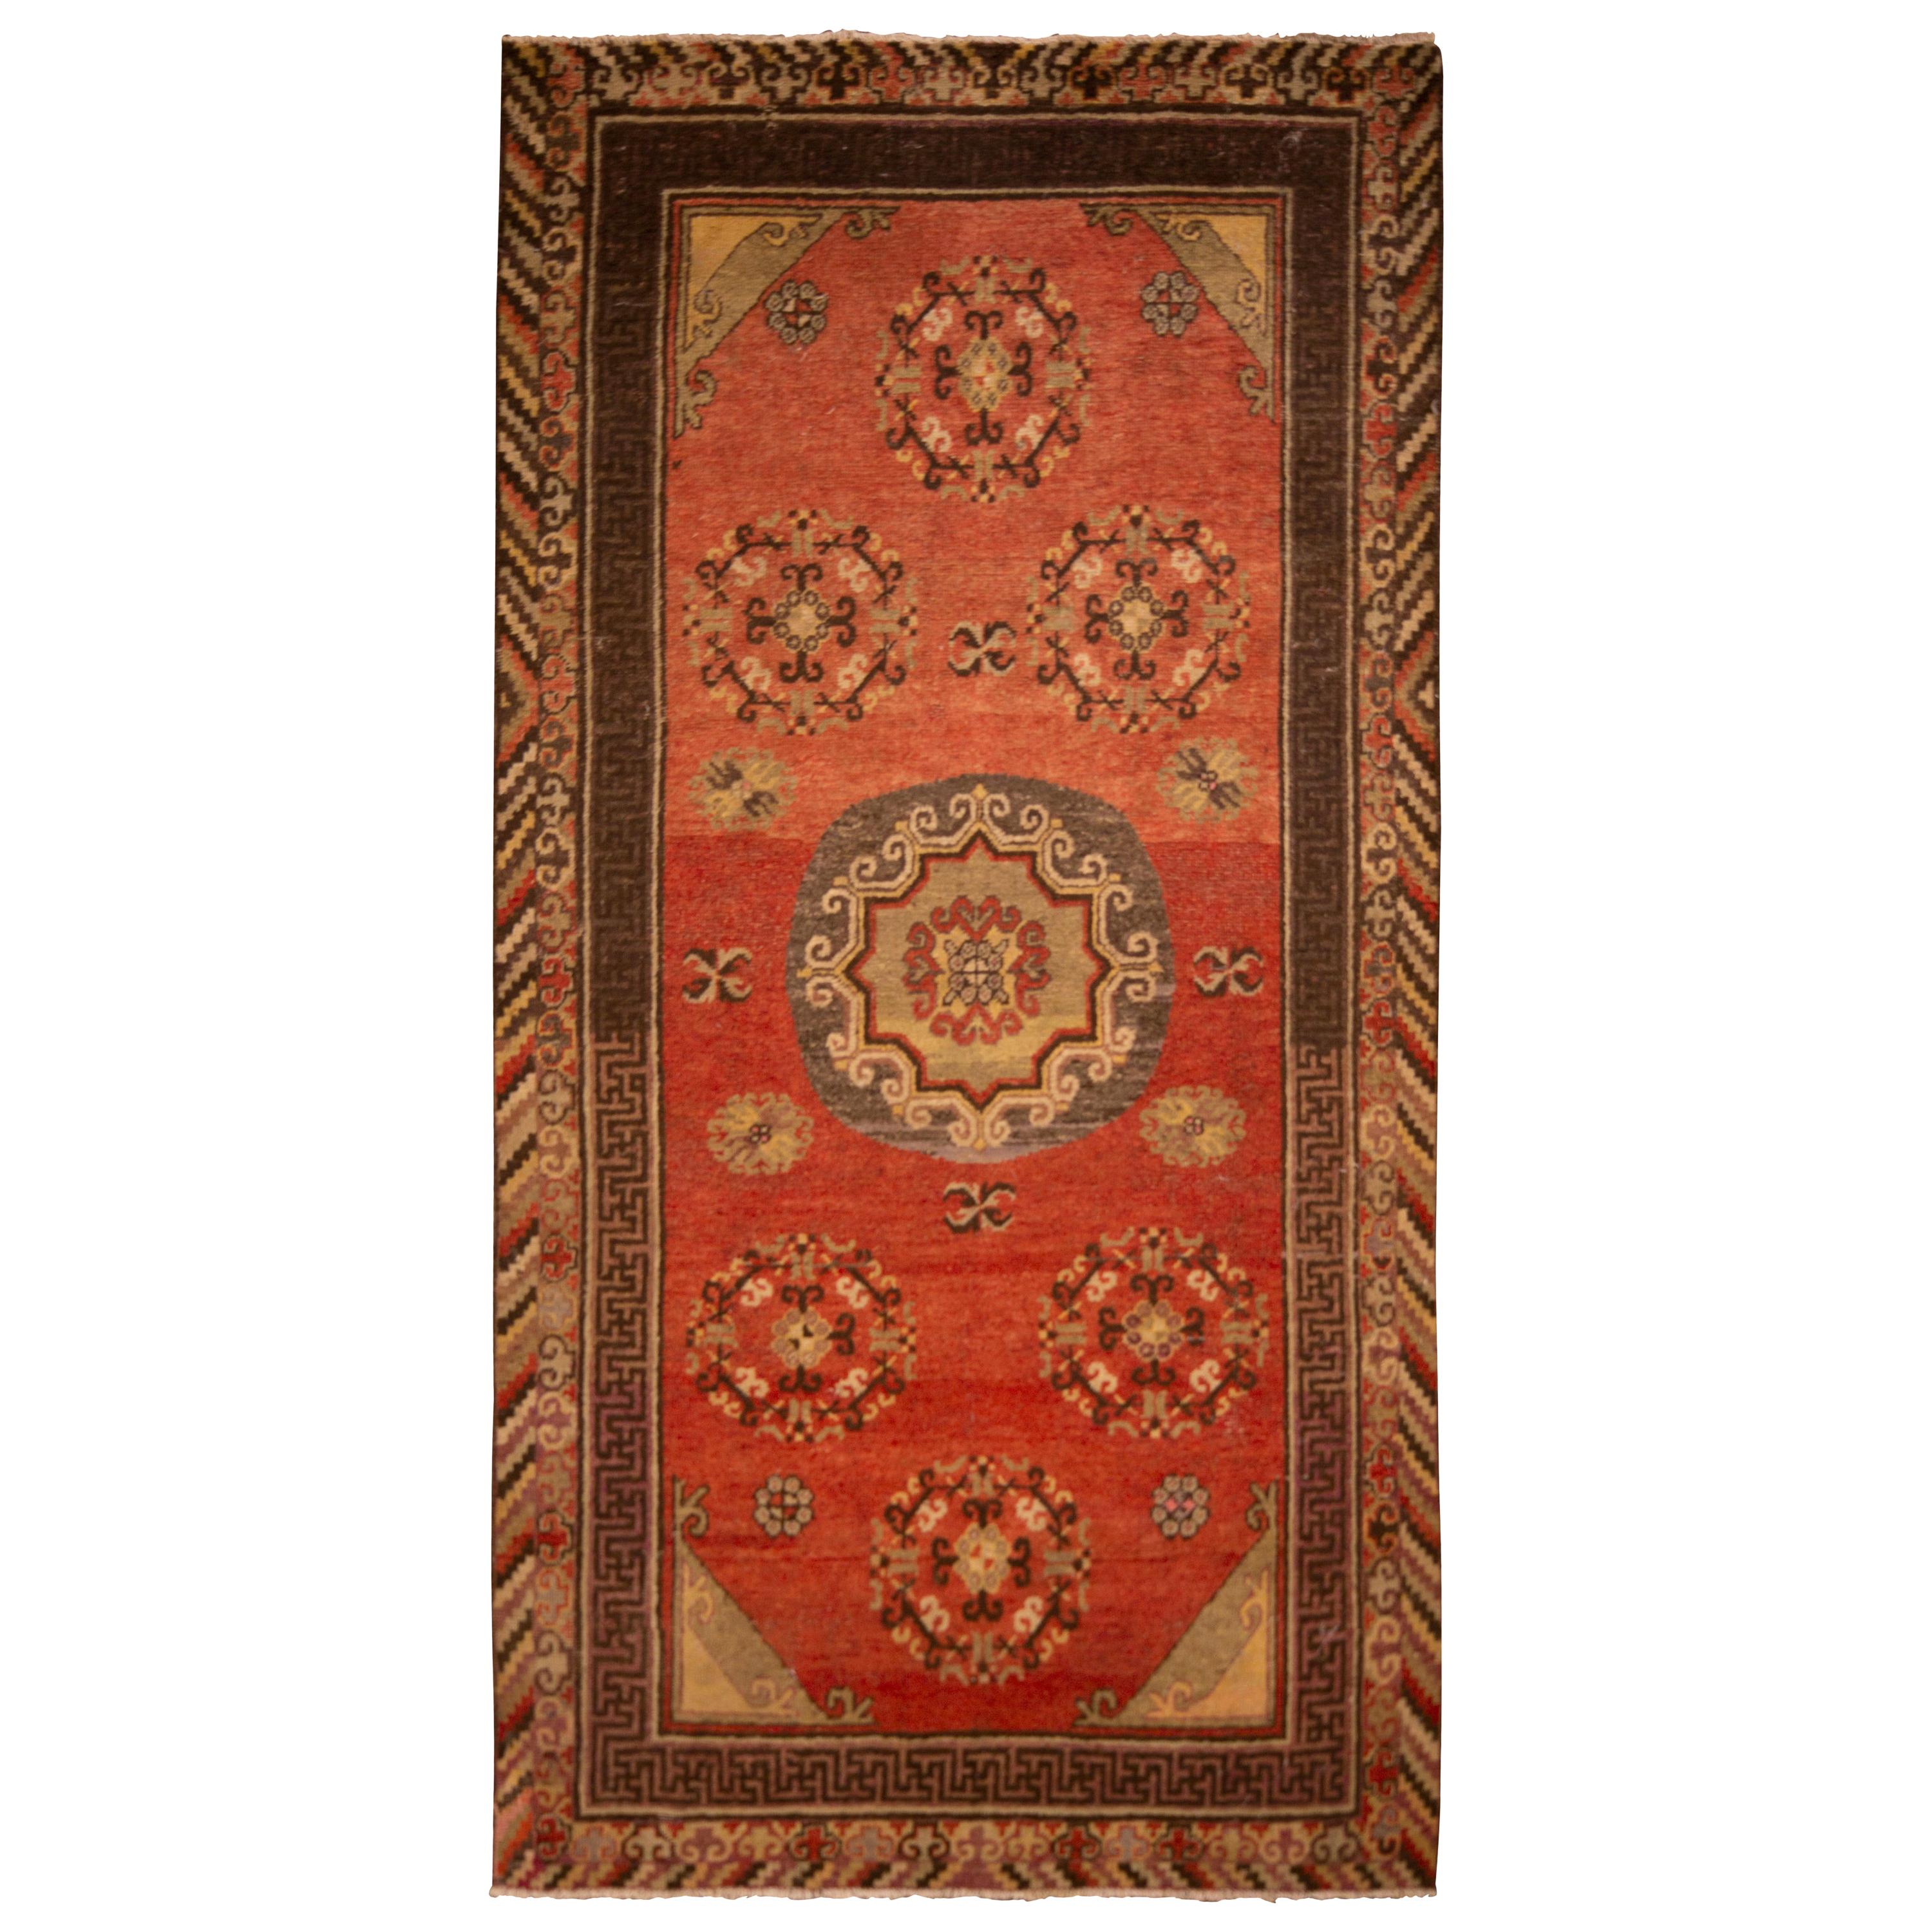 Antique Khotan Rug Red and Beige Medallion Pattern by Rug & Kilim For Sale